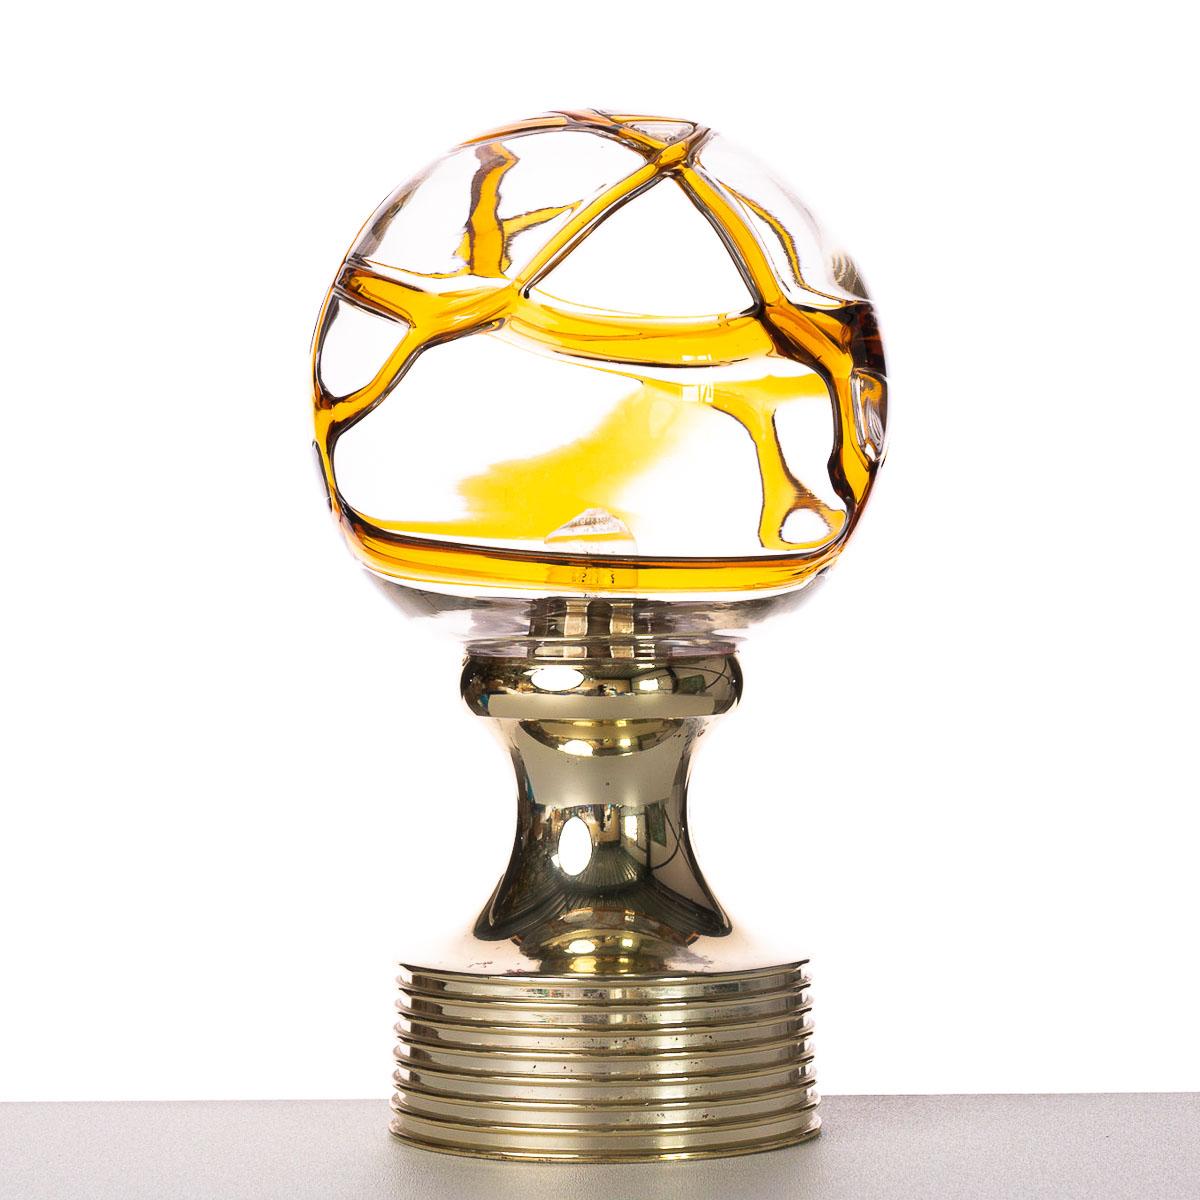 Boule en verre avec des lignes en verre jaune/orange. Pied en plastique avec couche dorée. Nous avons un lustre avec une grande boule de verre avec des lignes orange similaires.